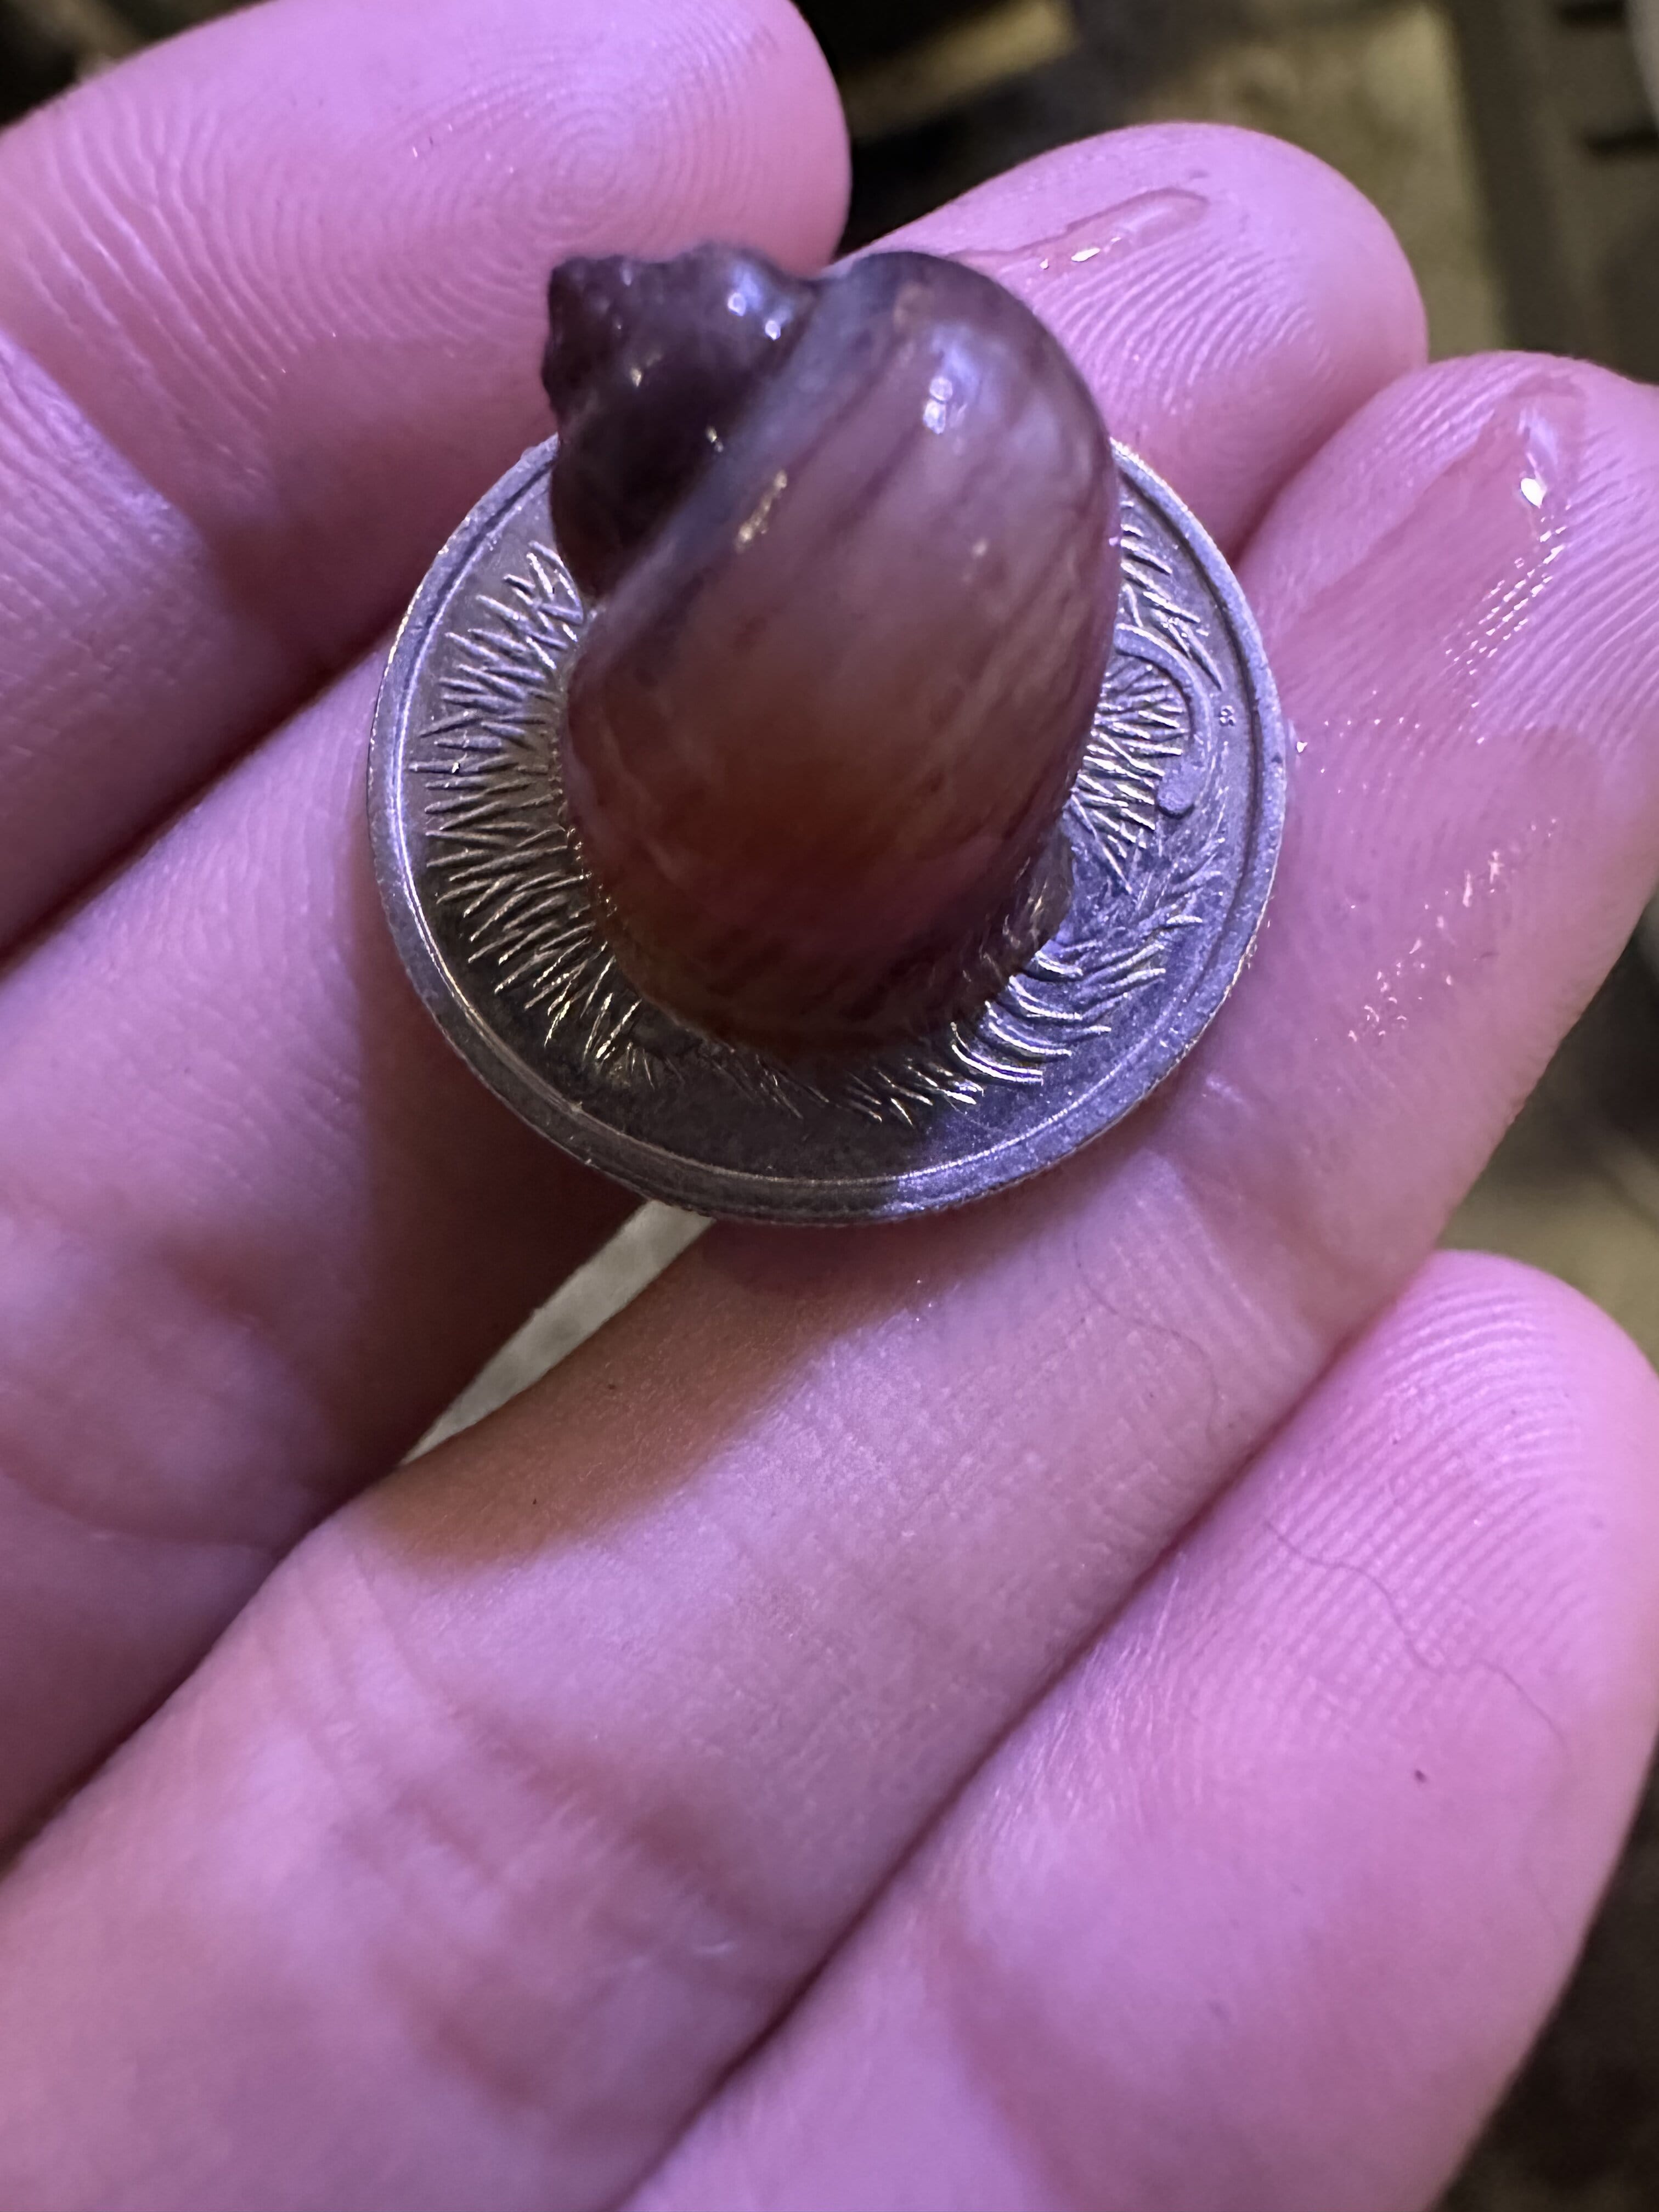 Rare Magenta Mystery Snail